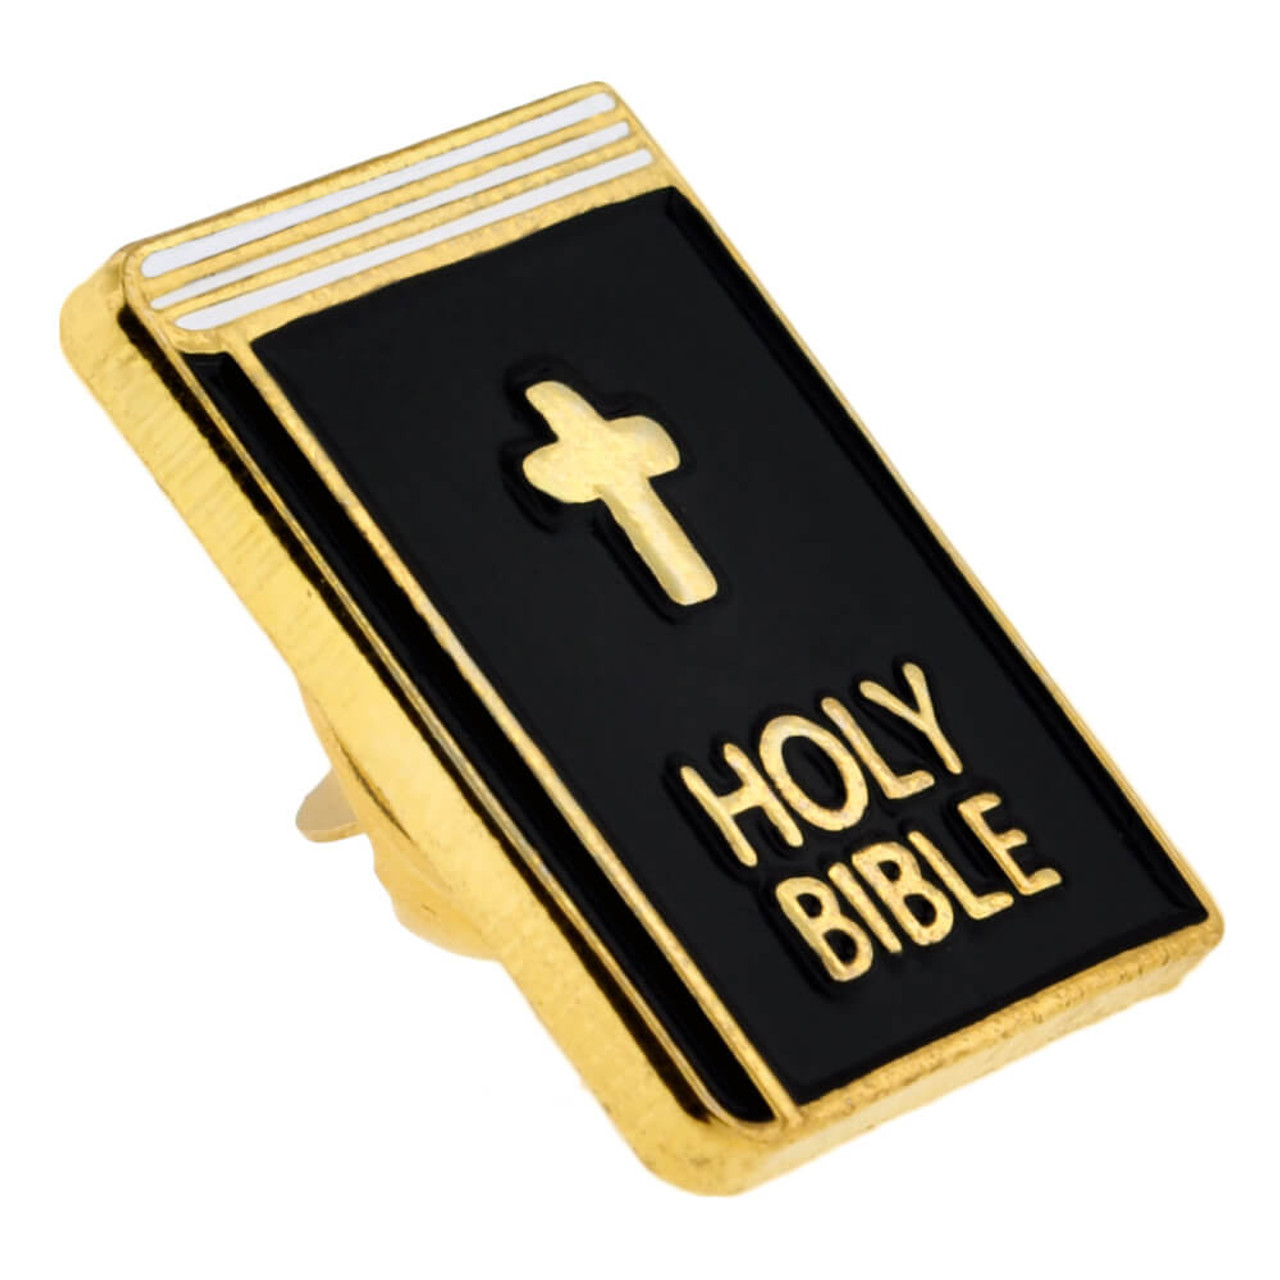 Pin on Bible